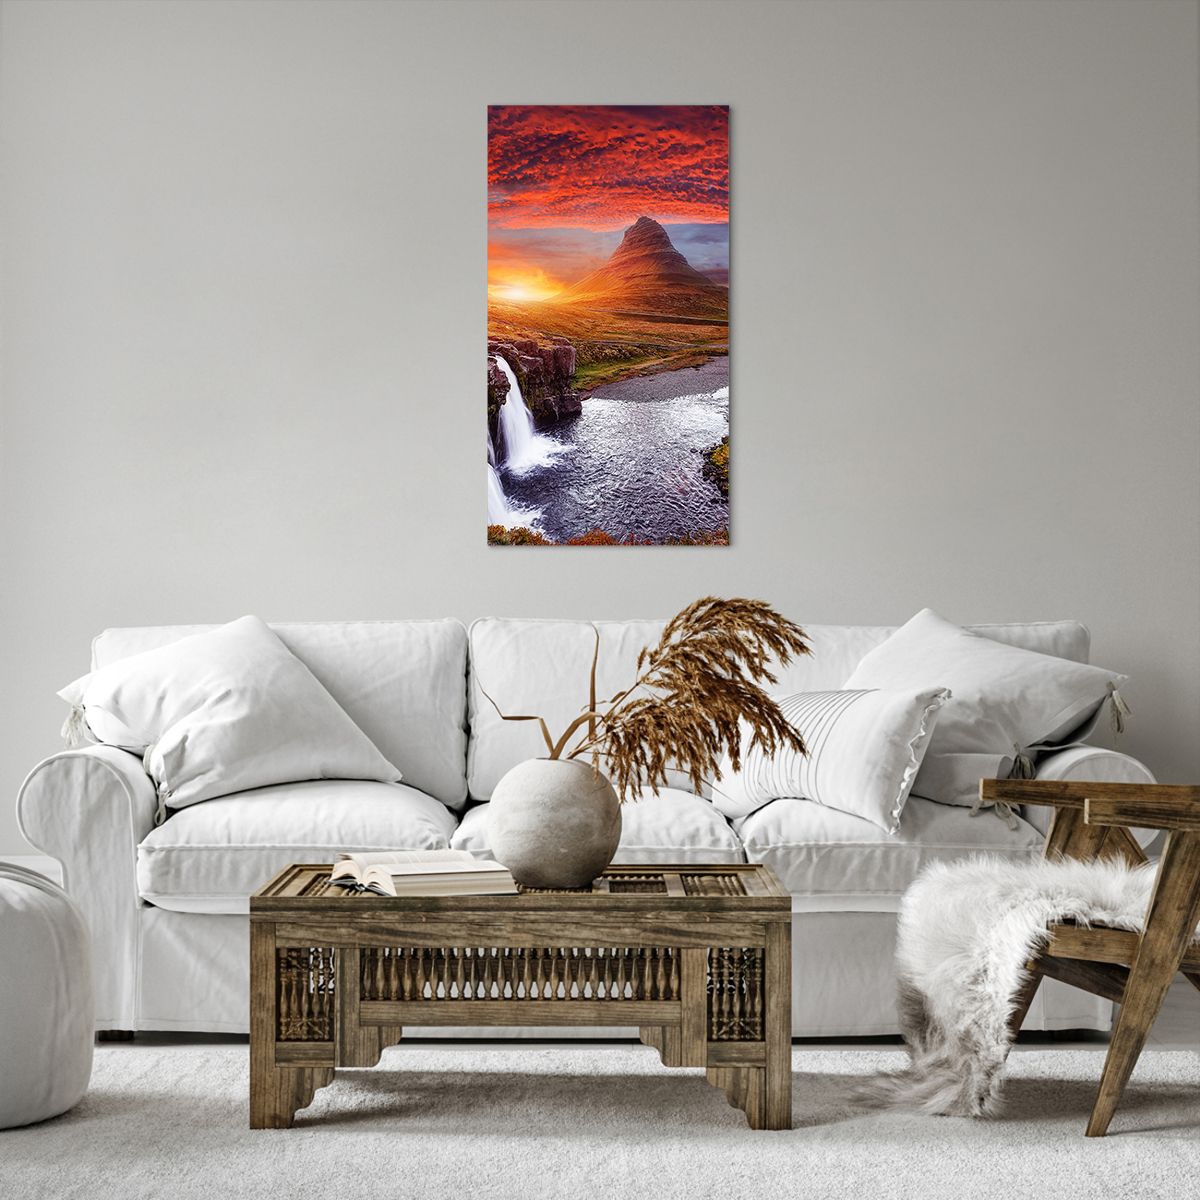 Bild auf Leinwand Landschaft, Bild auf Leinwand Wasserfall, Bild auf Leinwand Island, Bild auf Leinwand Berg Kirkjufell, Bild auf Leinwand Natur